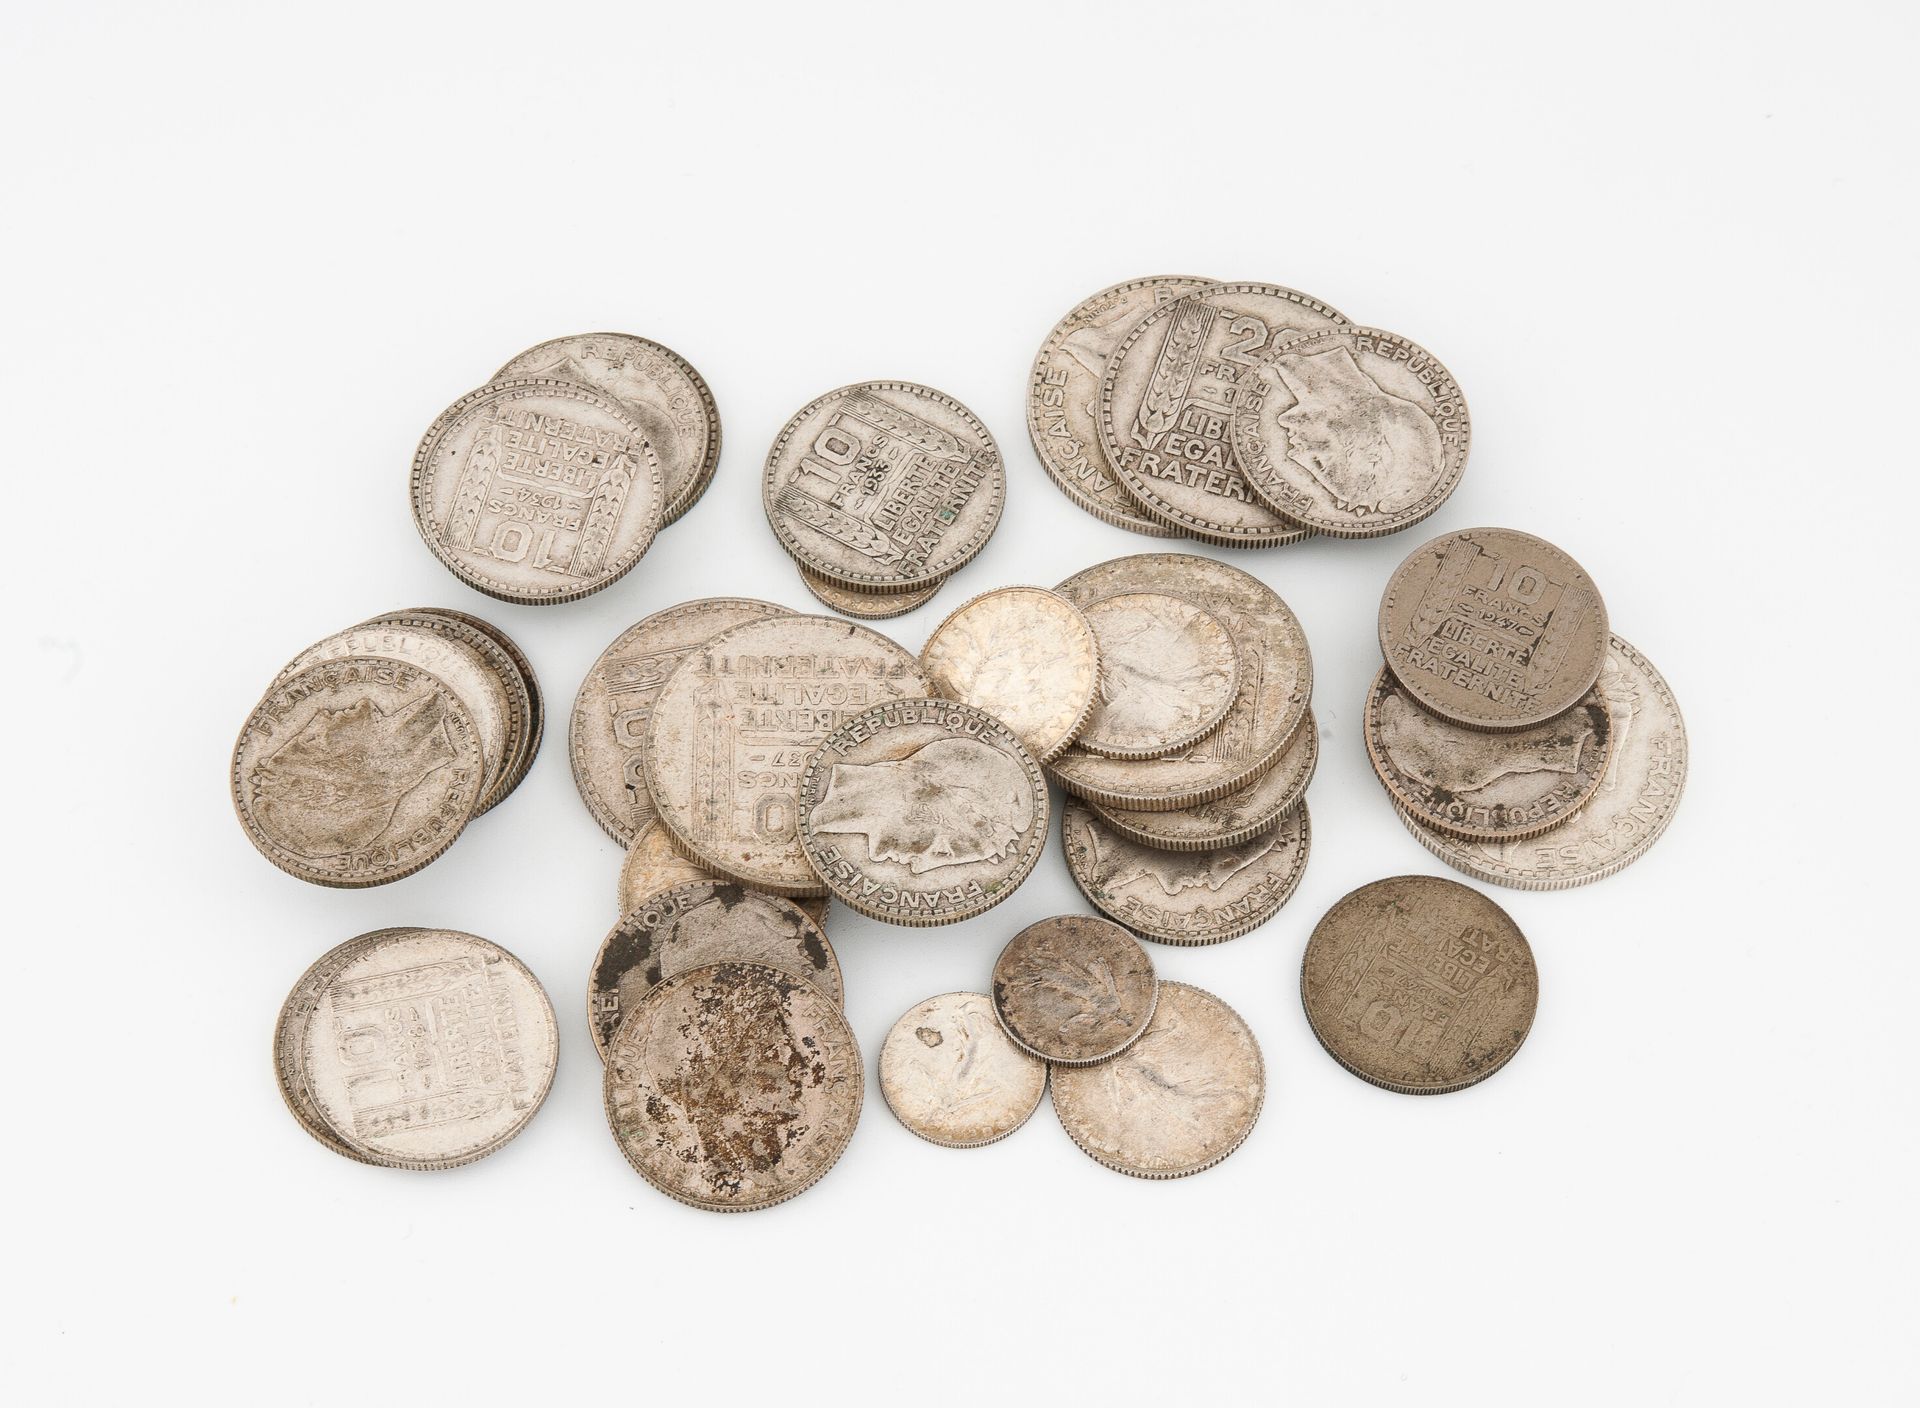 Null Lot von Silbermünzen (min. 800), meist Turin und einige Semeuse.

Gesamtgew&hellip;